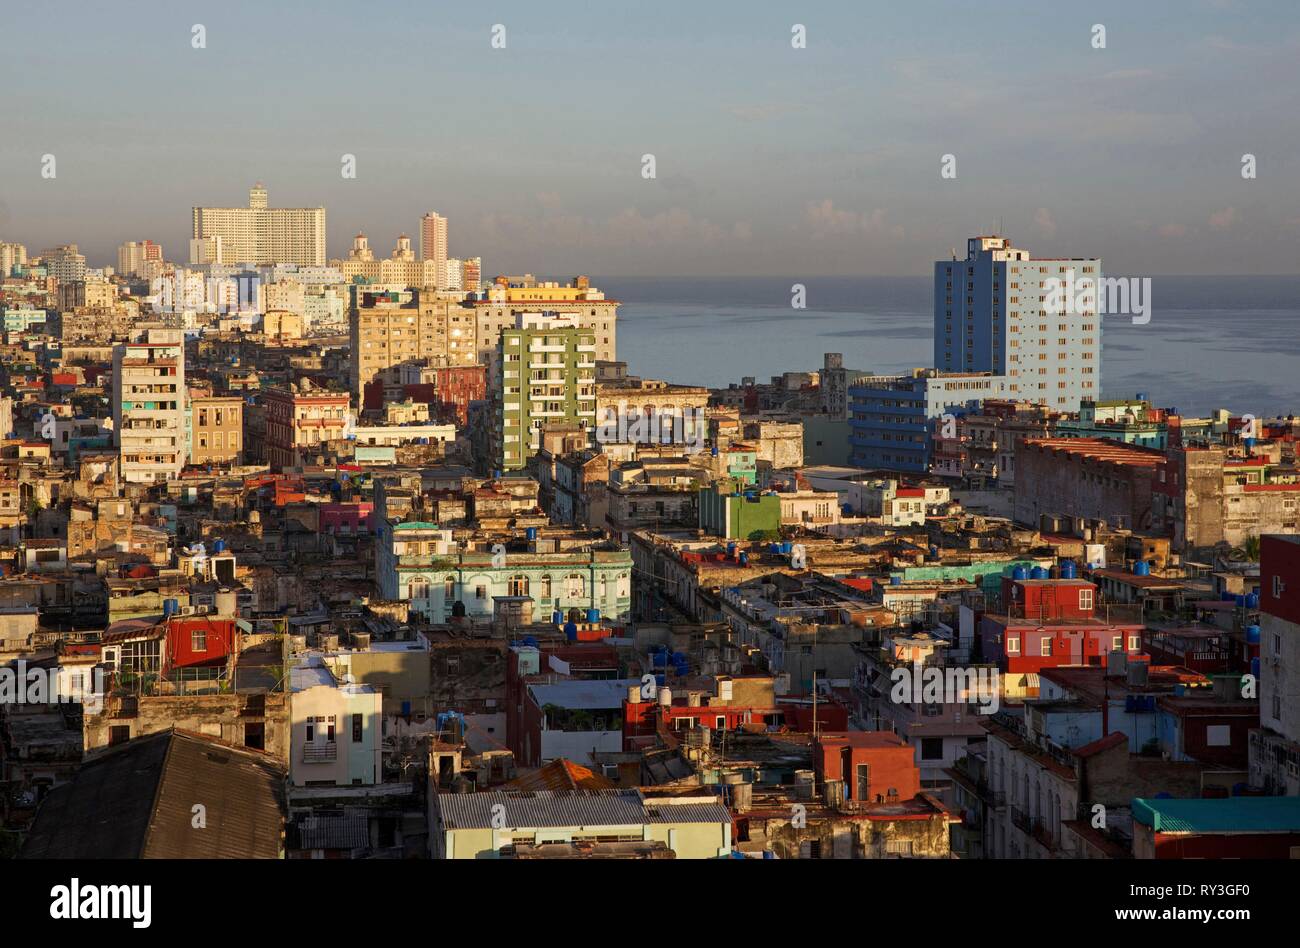 Cuba, La Habana, Havana Vecchia, panorama sui tetti del centro Habana fino a quando l'oceano, dall'ultimo piano dell'hotel Mercure Sevilla Foto Stock